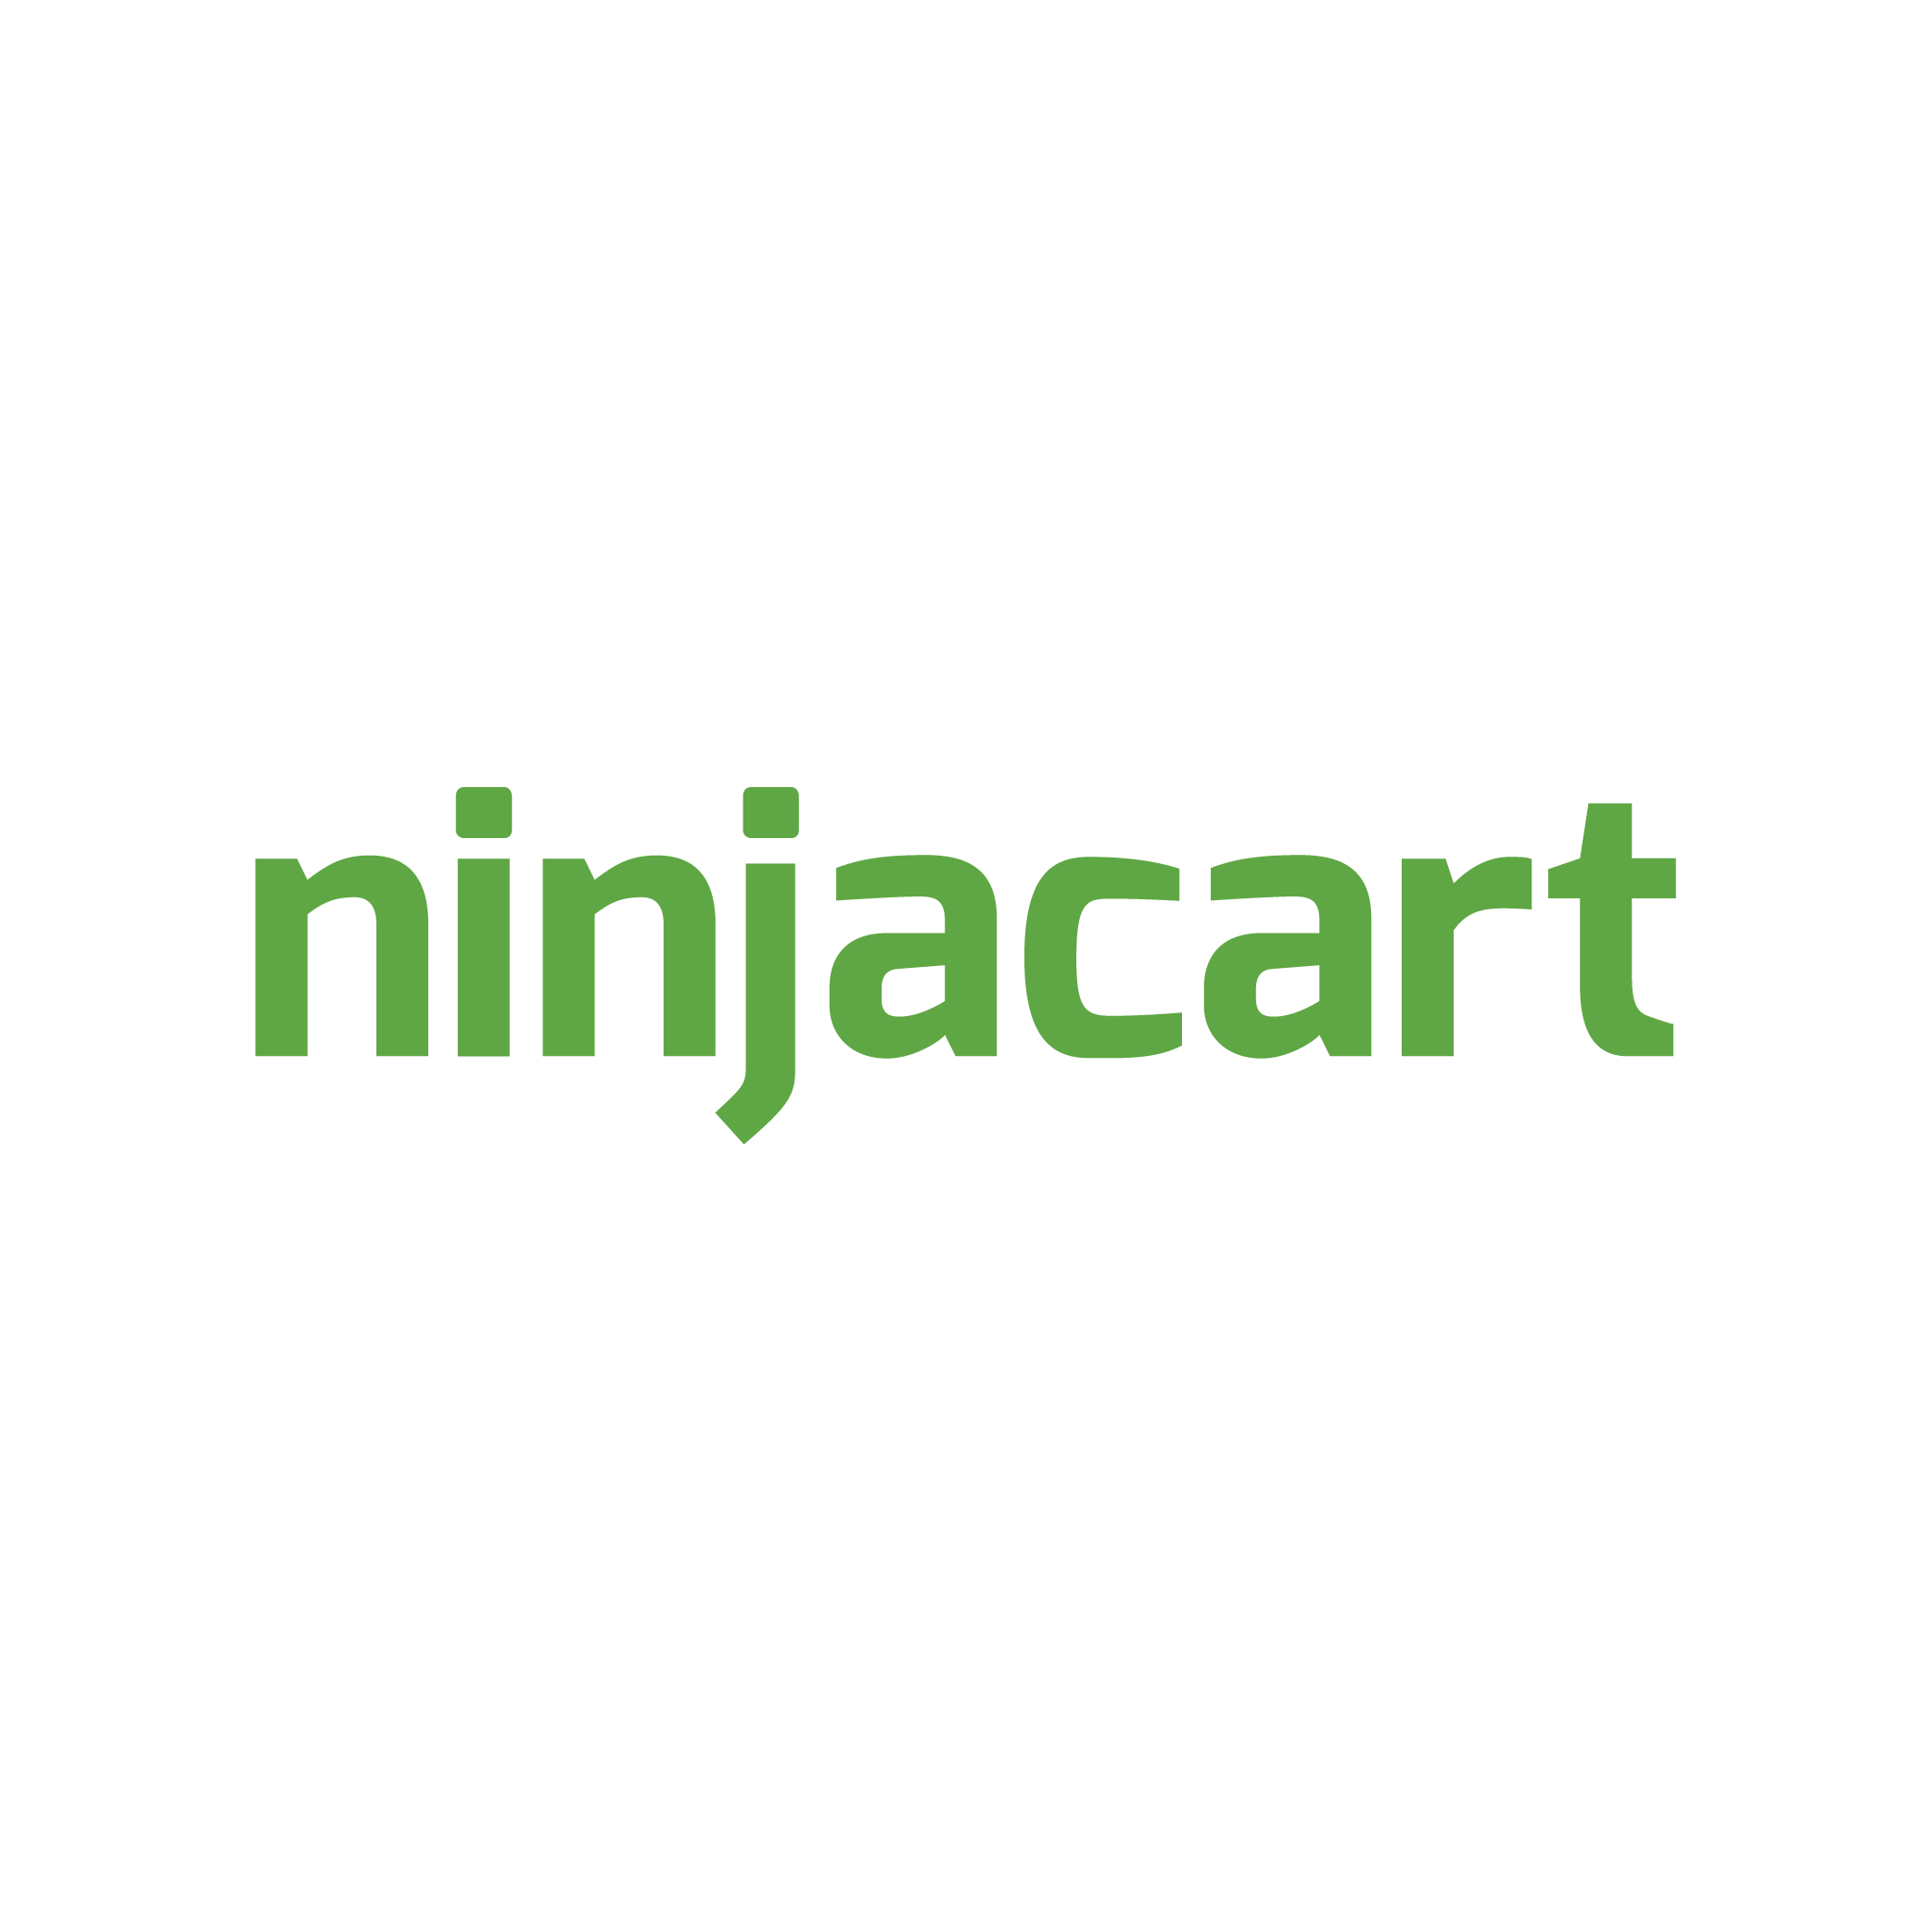 Ninjacart